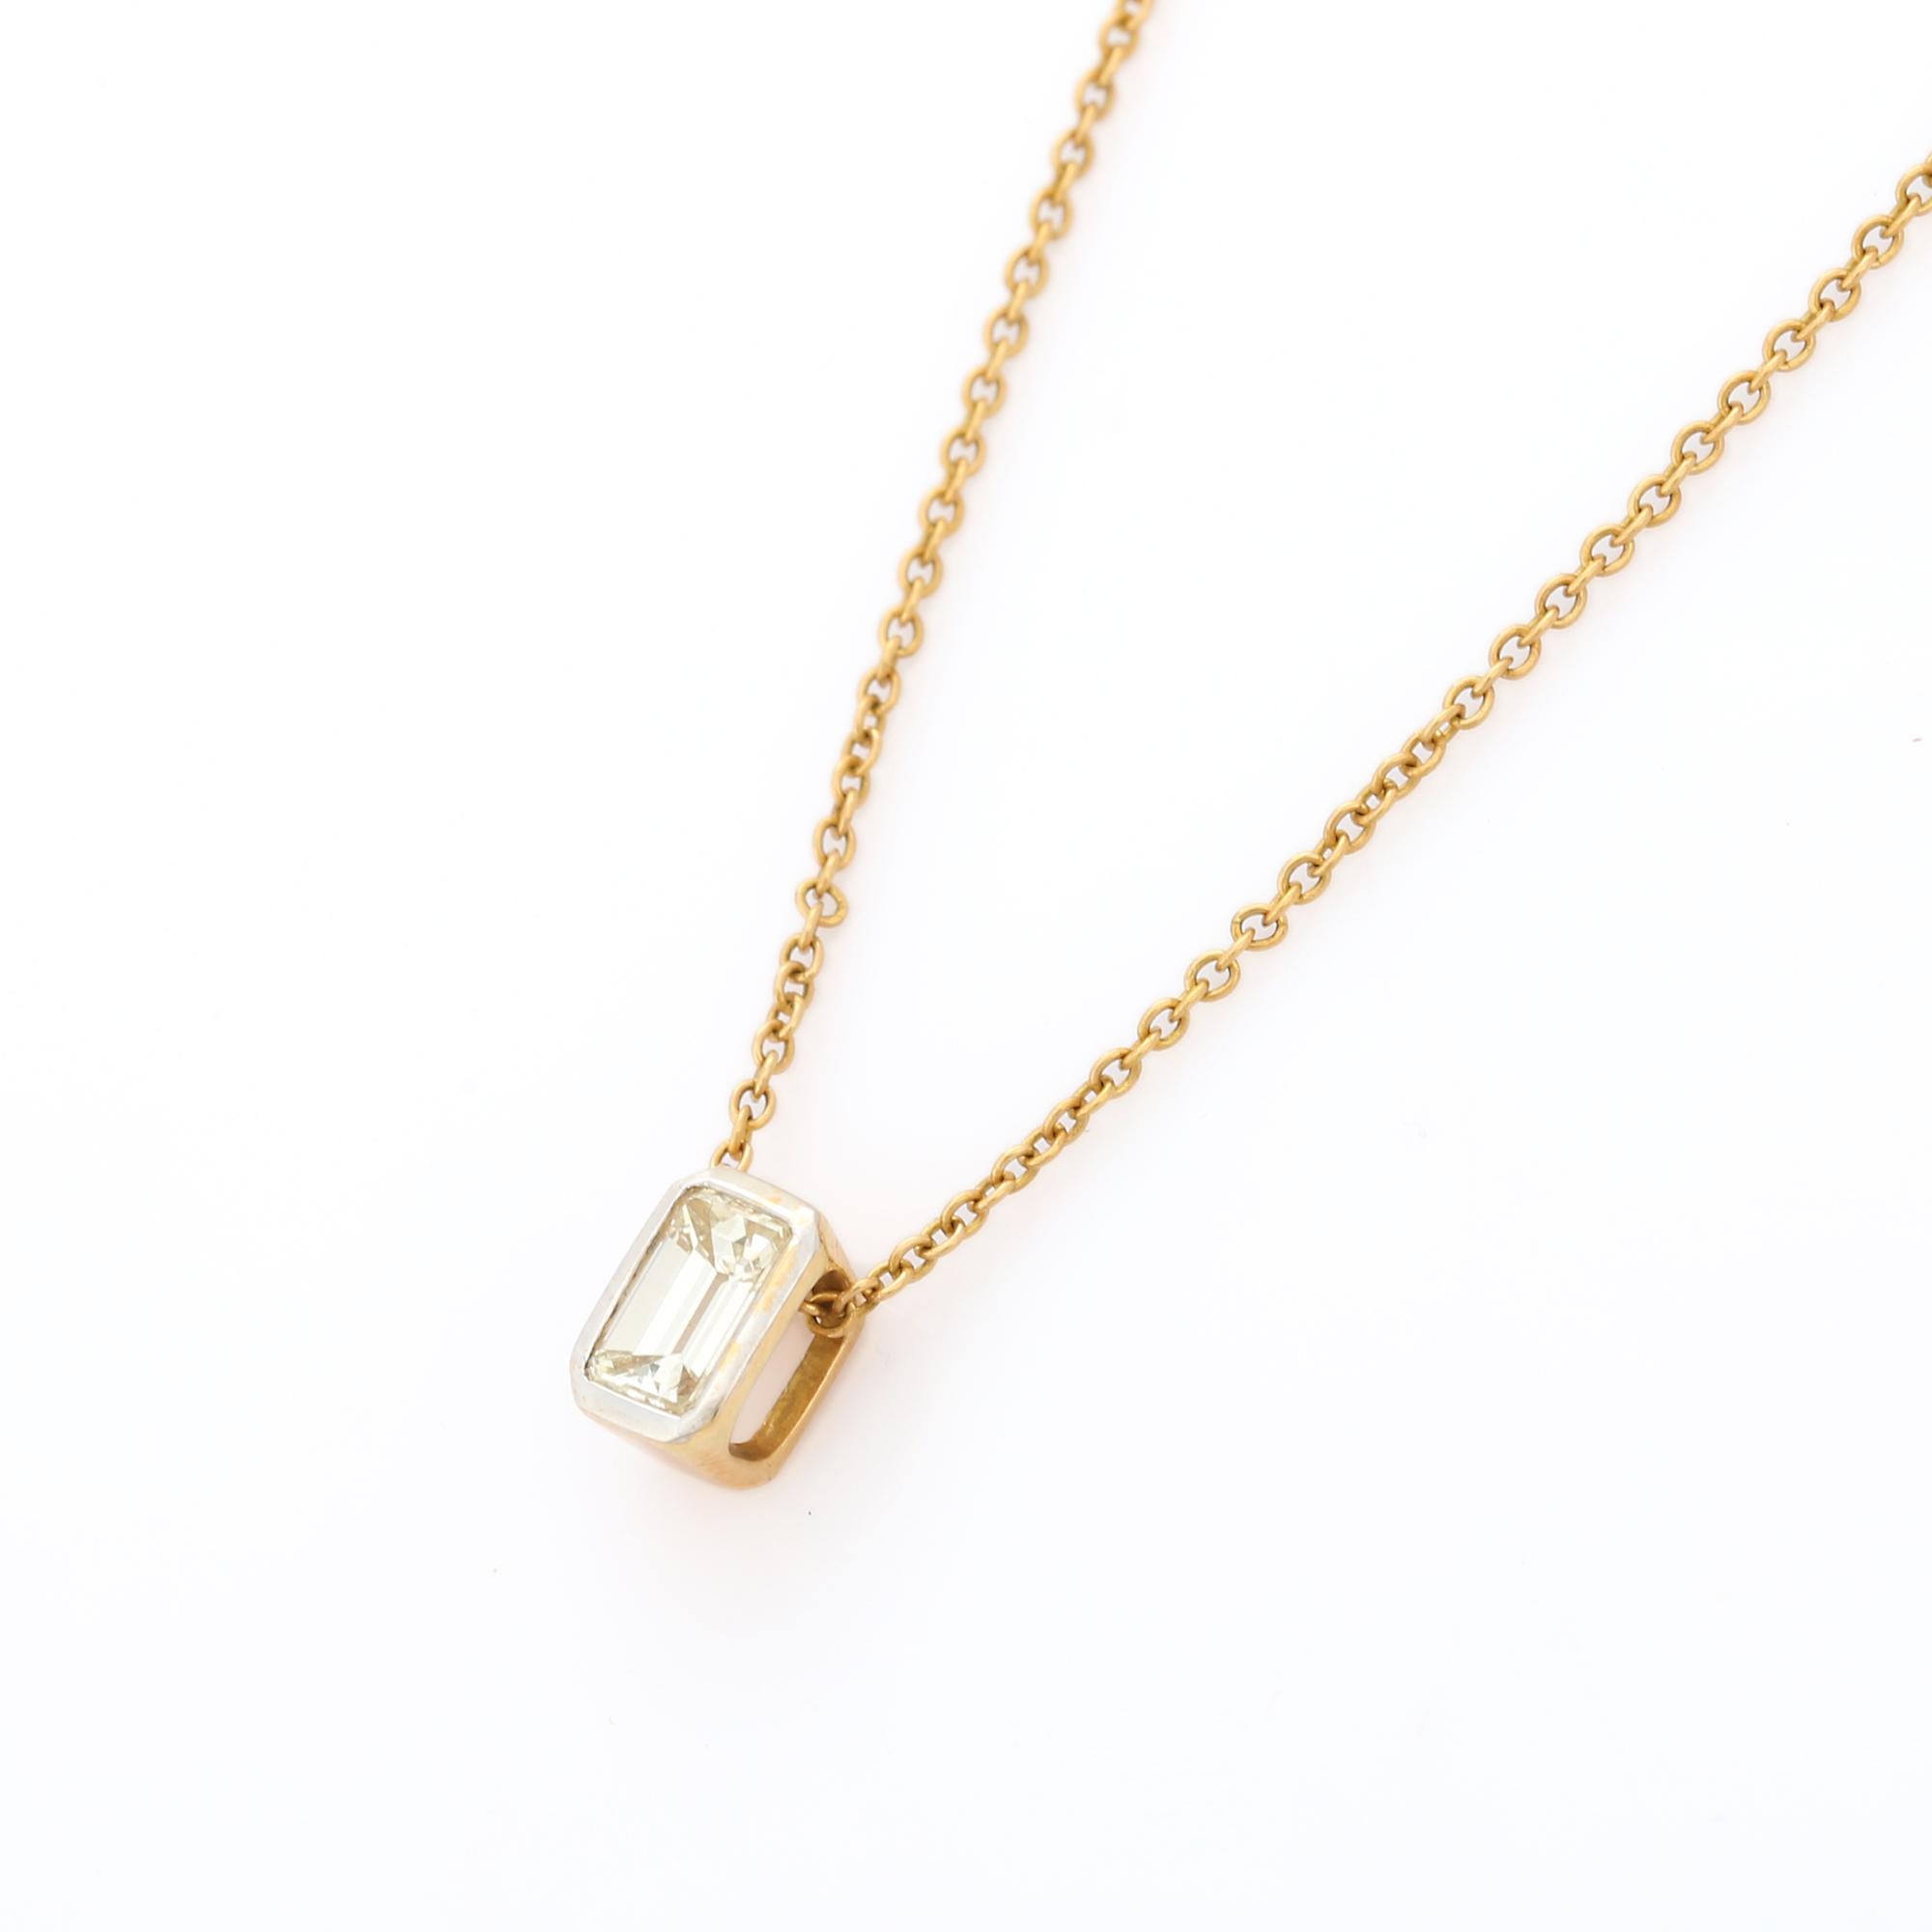 Diamant-Halskette aus 18-karätigem Gold, besetzt mit Diamanten im Oktagon-Schliff.
Ergänzen Sie Ihren Look mit dieser eleganten Diamantketten-Halskette. Dieses atemberaubende Schmuckstück wertet einen Freizeitlook oder ein elegantes Outfit sofort